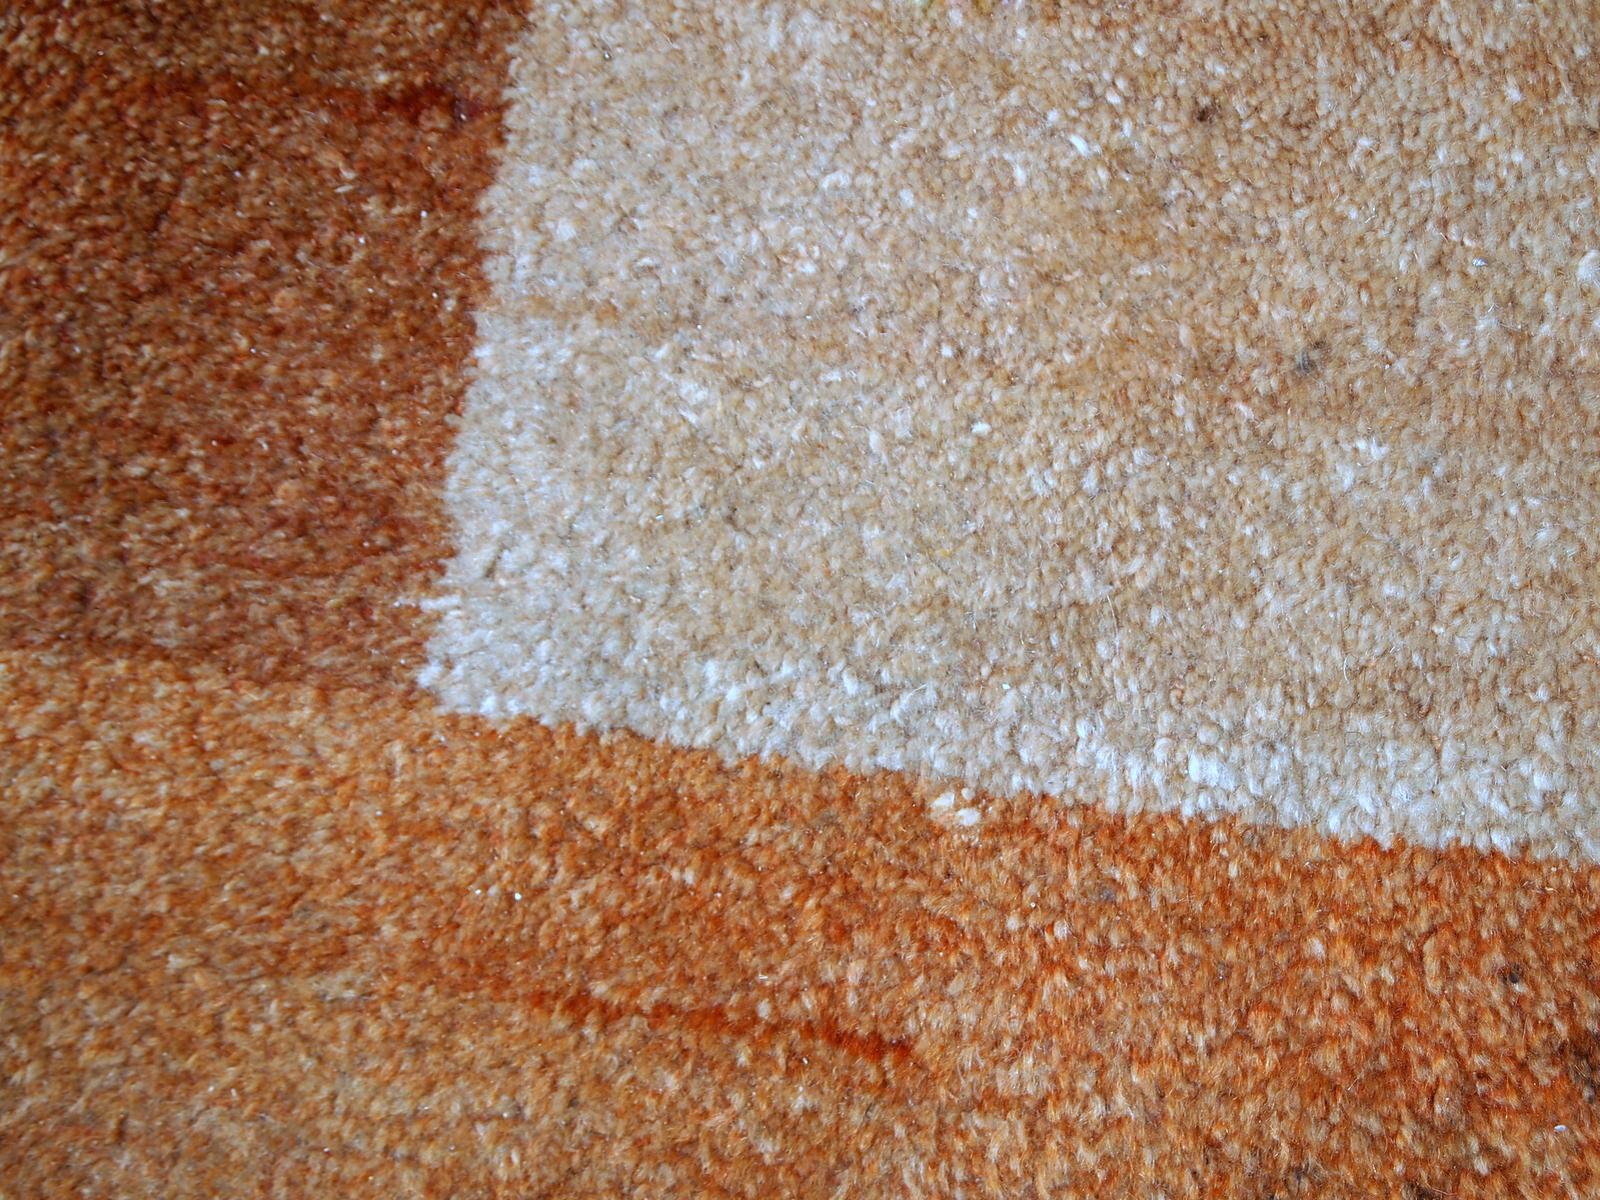 Persischer Gabbeh-Teppich in gutem Originalzustand. Es ist aus bräunlicher, beiger und roter Wolle mit geometrischem Muster, hergestellt Ende des 20. Jahrhunderts.

-zustand: original gut,

-ca. 1980er Jahre,

-größe: 6,5' x 9,8' (200cm x